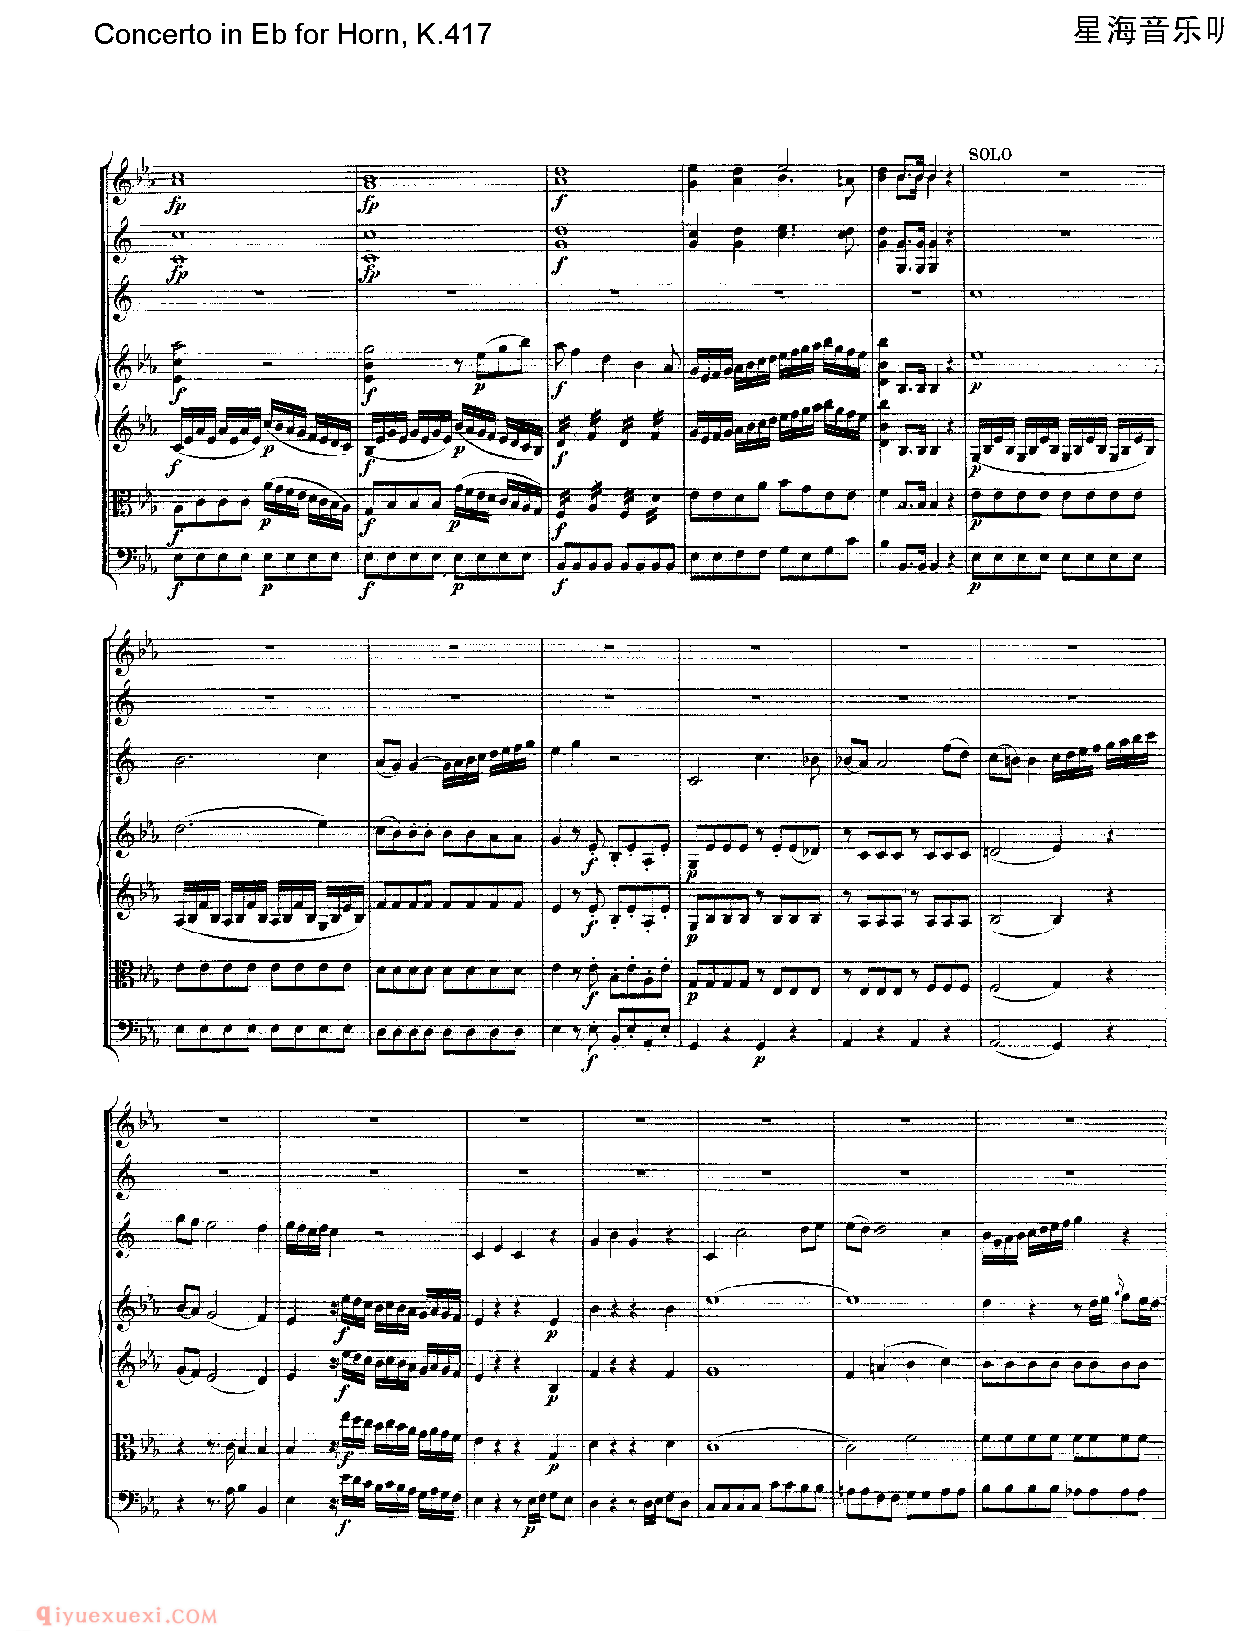 莫扎特  Concerto in Eb for Horn, K.417/降E大调第二圆号协奏曲 作品号K417